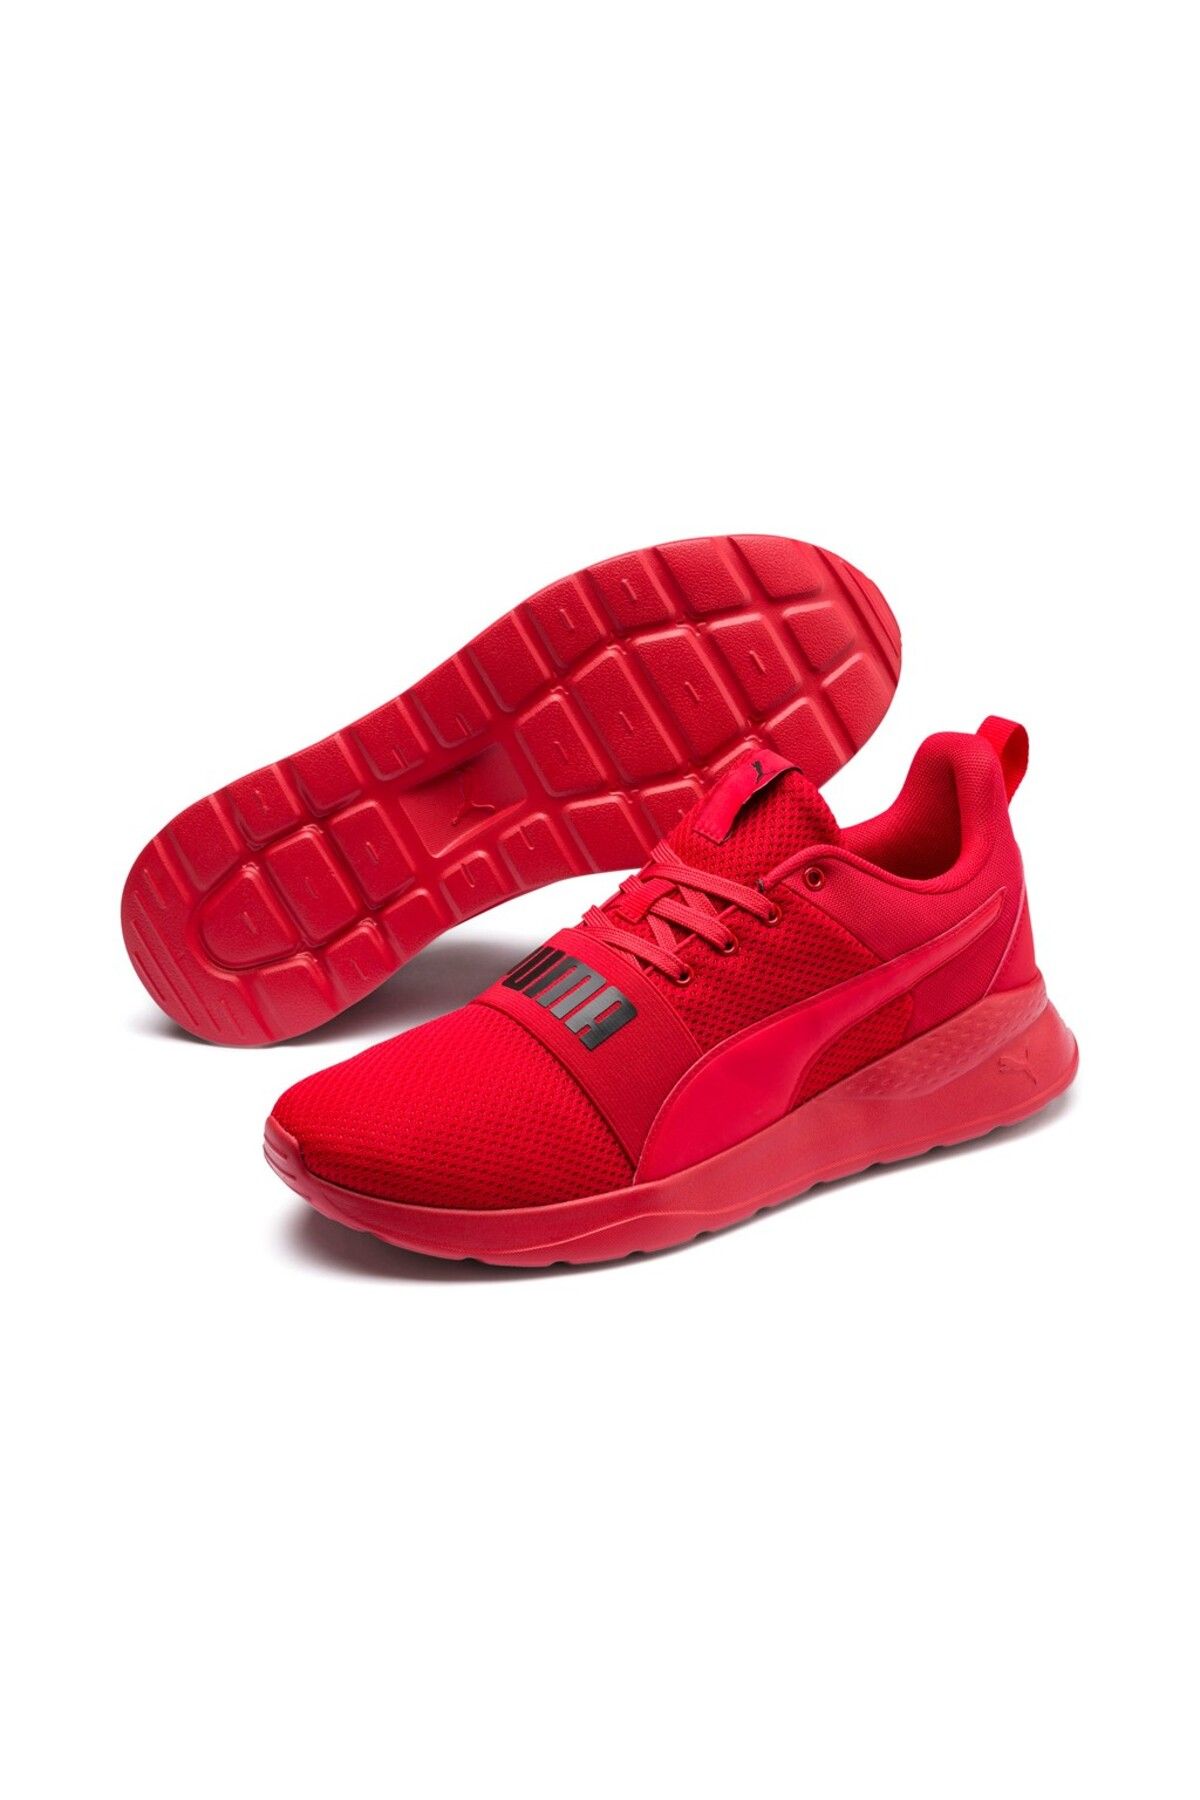 Puma Anzarun Lite Bold Unisex Kırmızı Spor Ayakkabı372362-04